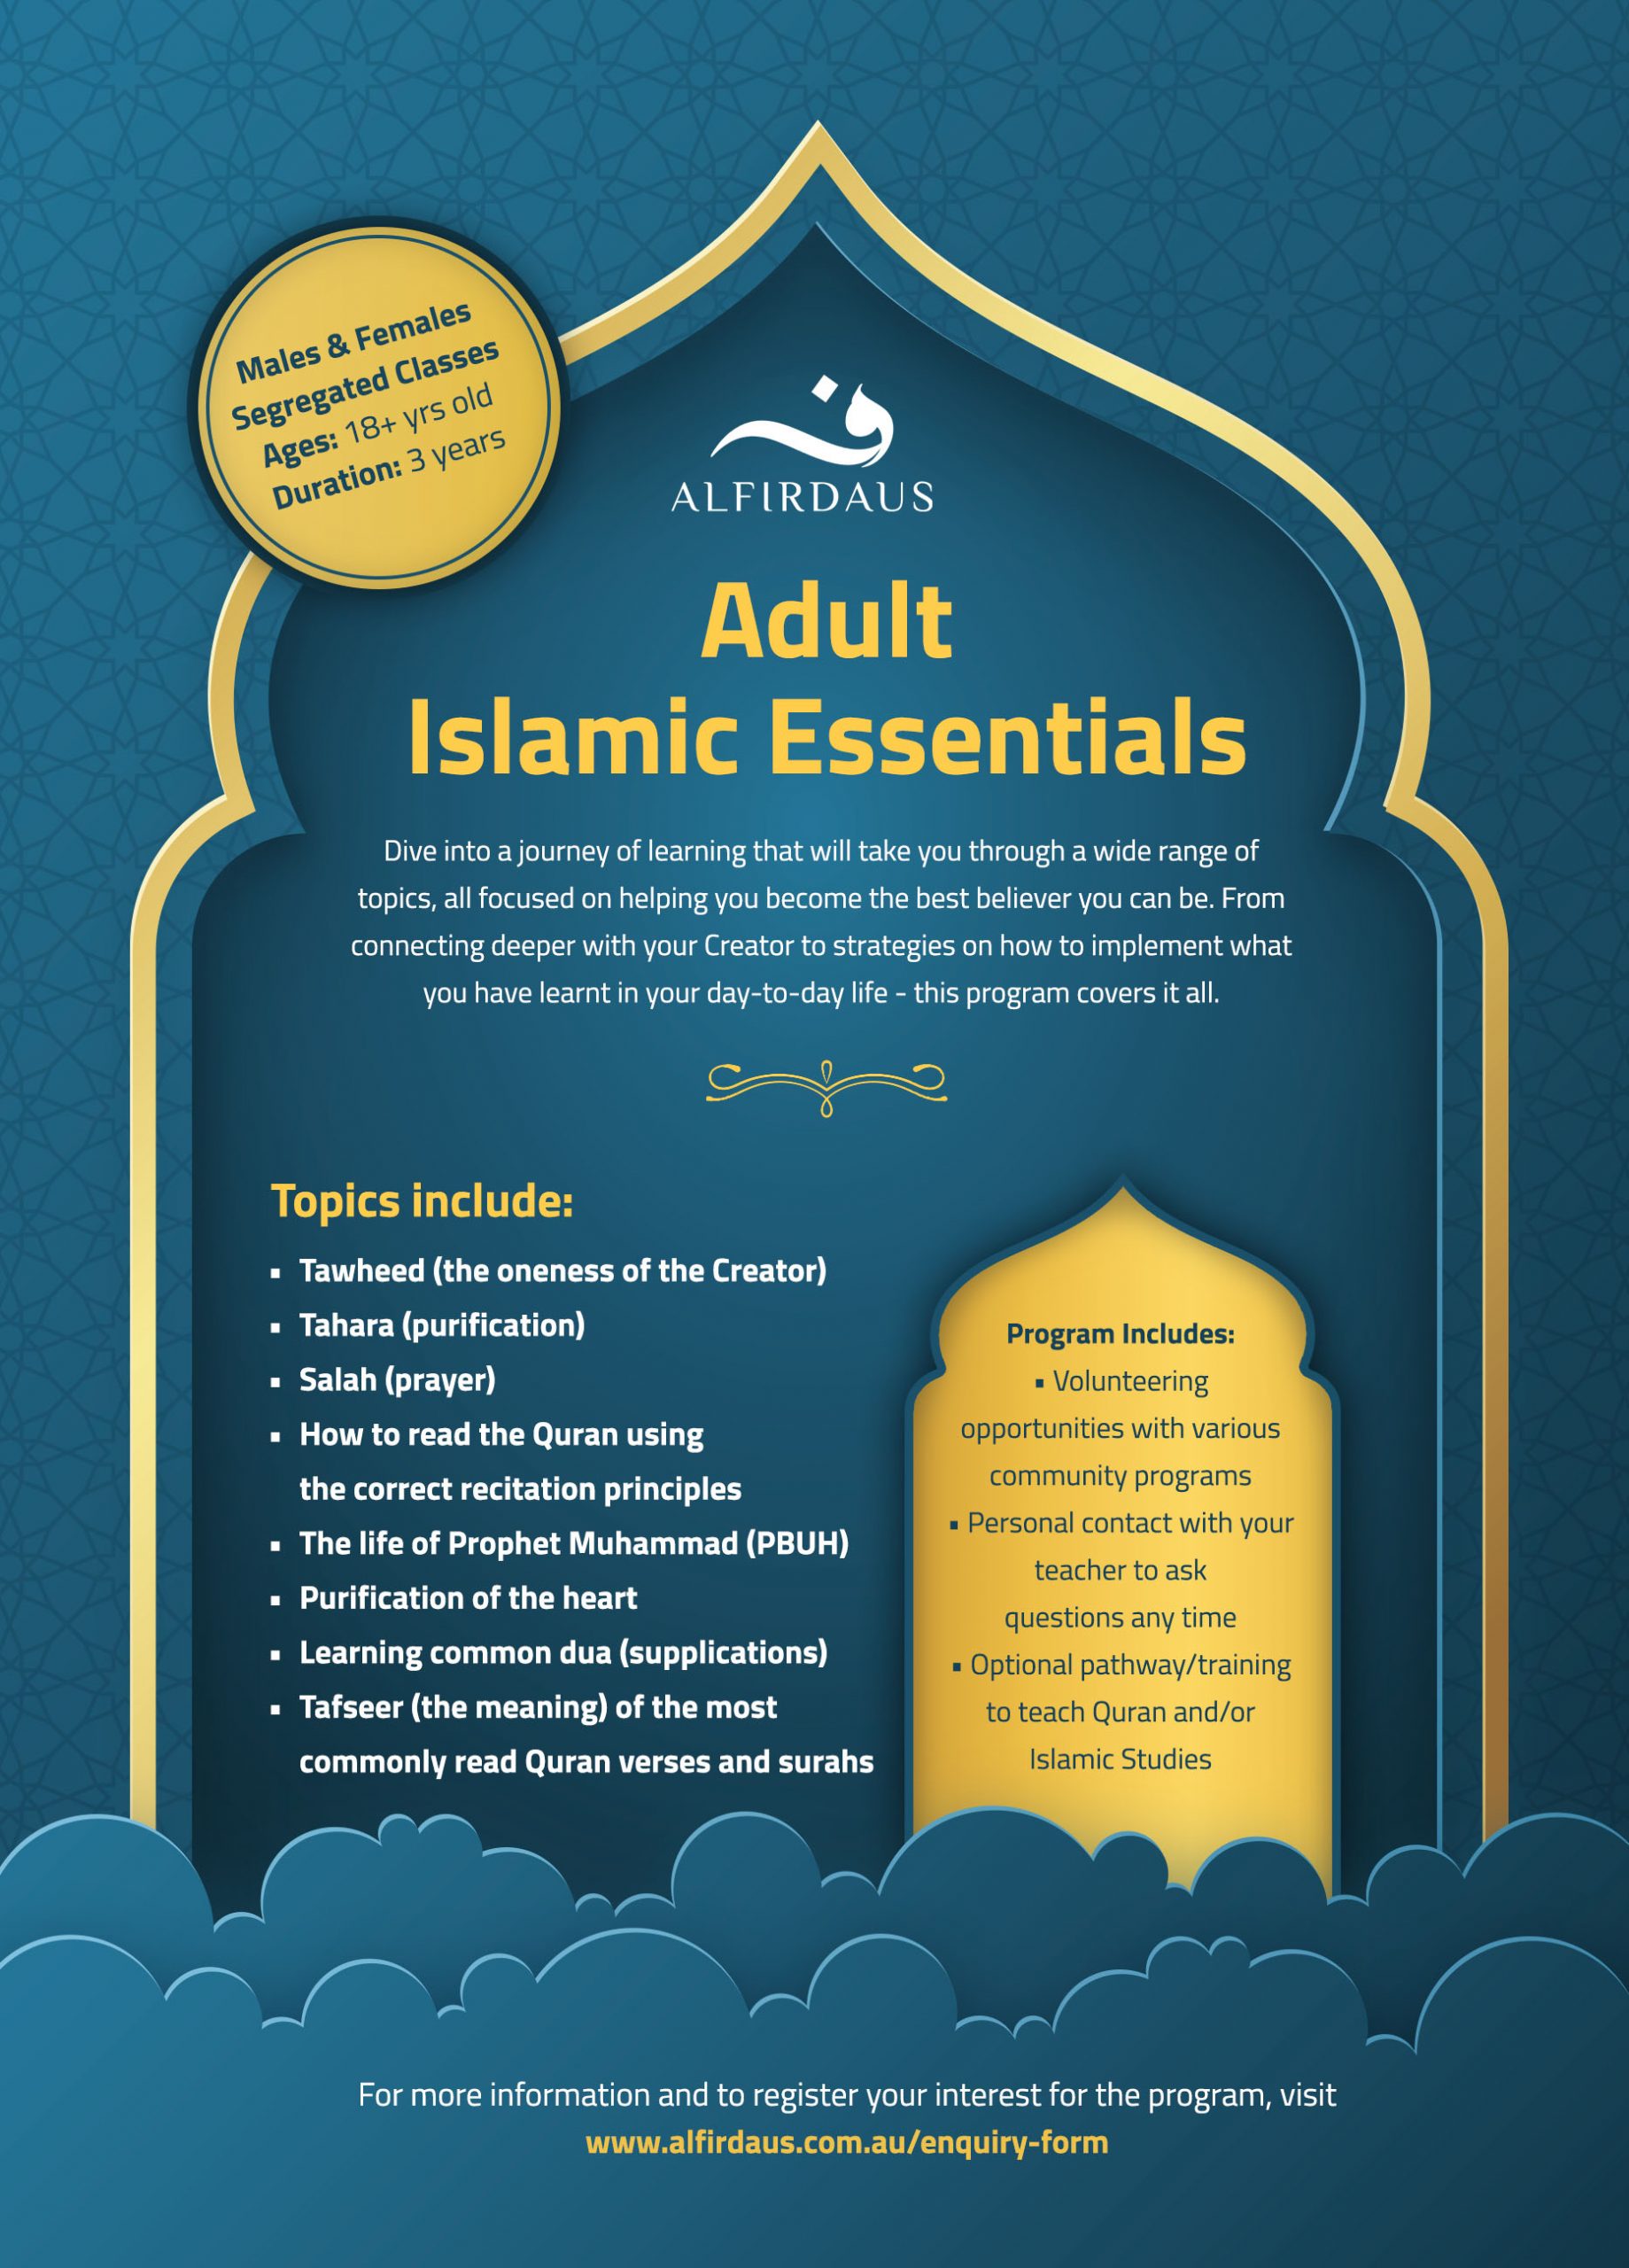 Adult Islamic Essentials